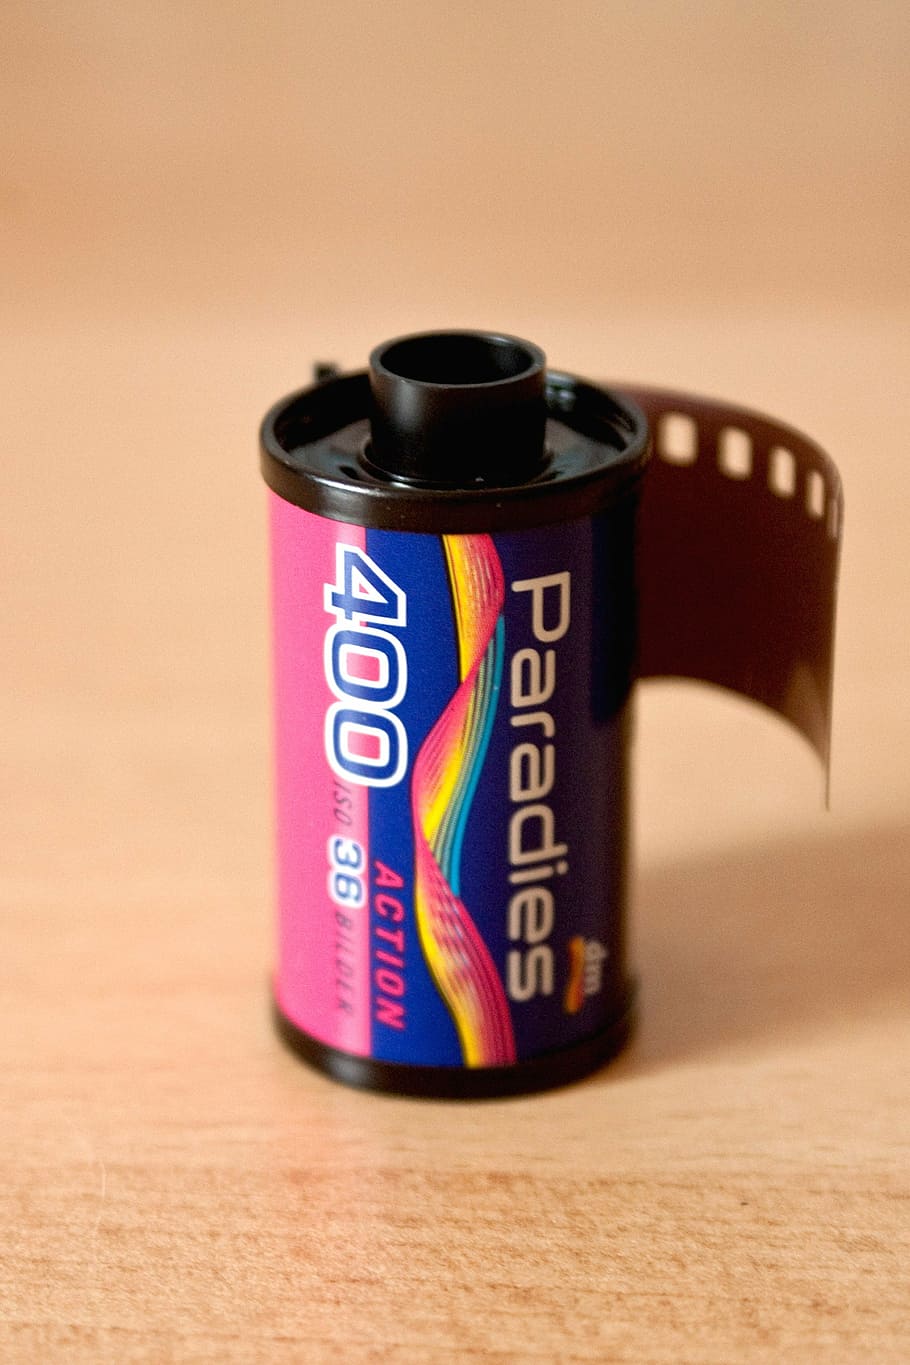 analógico, filme, caixa, caixa de filme, filme de 35mm, fotografia, gravação, mídia, negativo, tira de filme